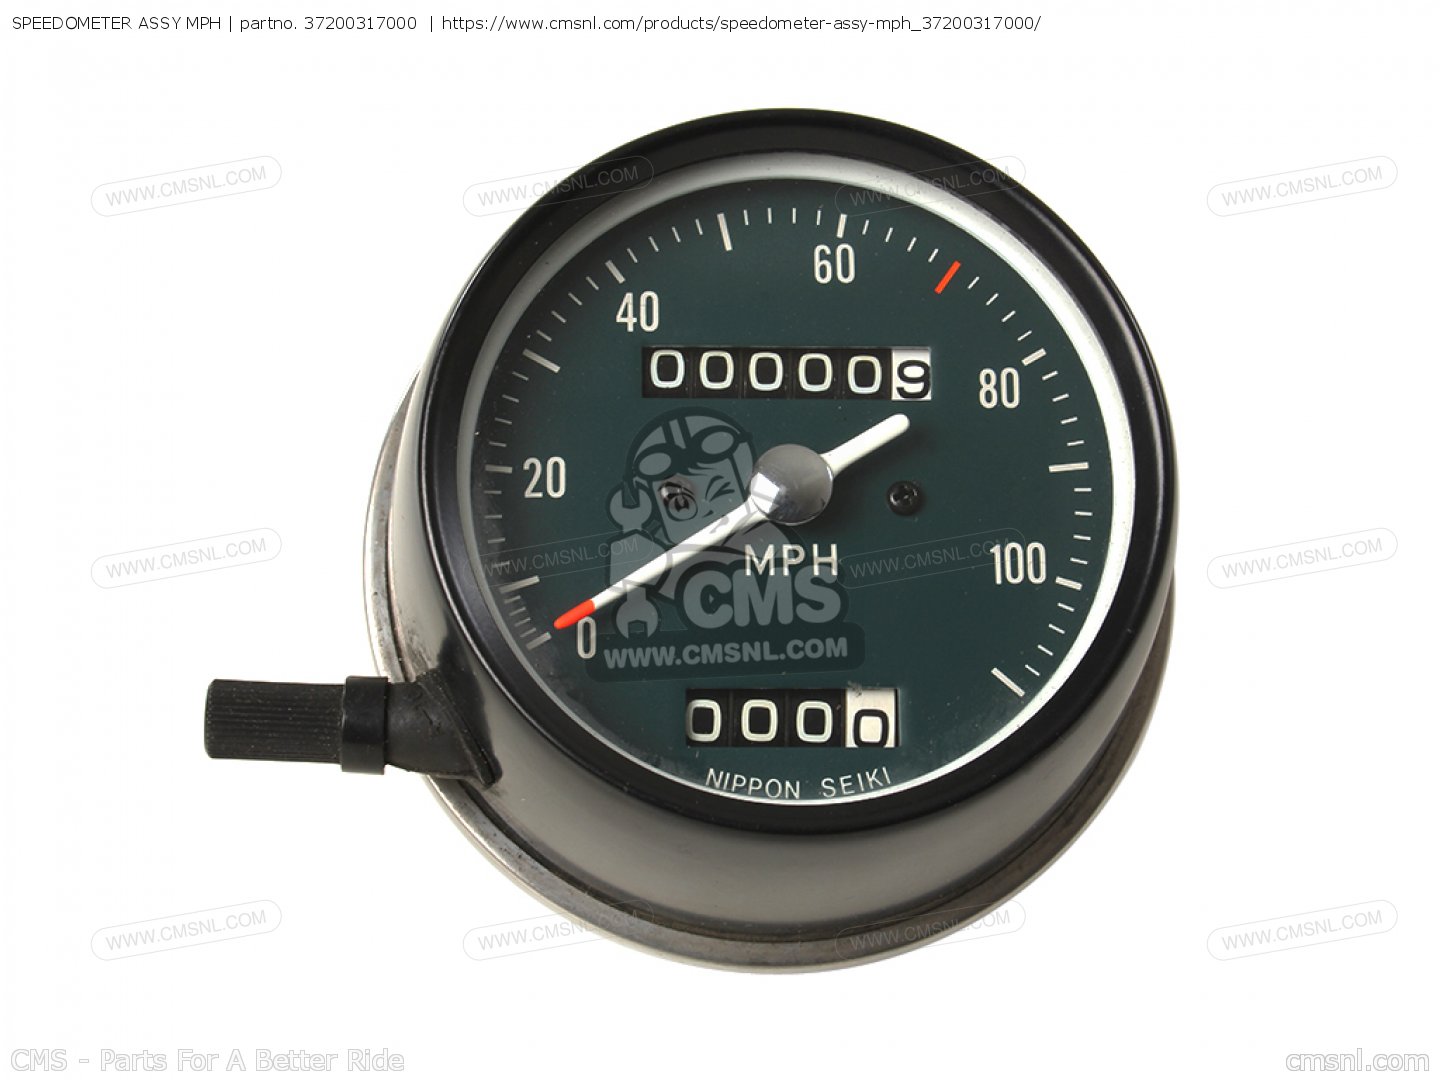 speedometer-assy_big37200317000-01_0f9d.jpg